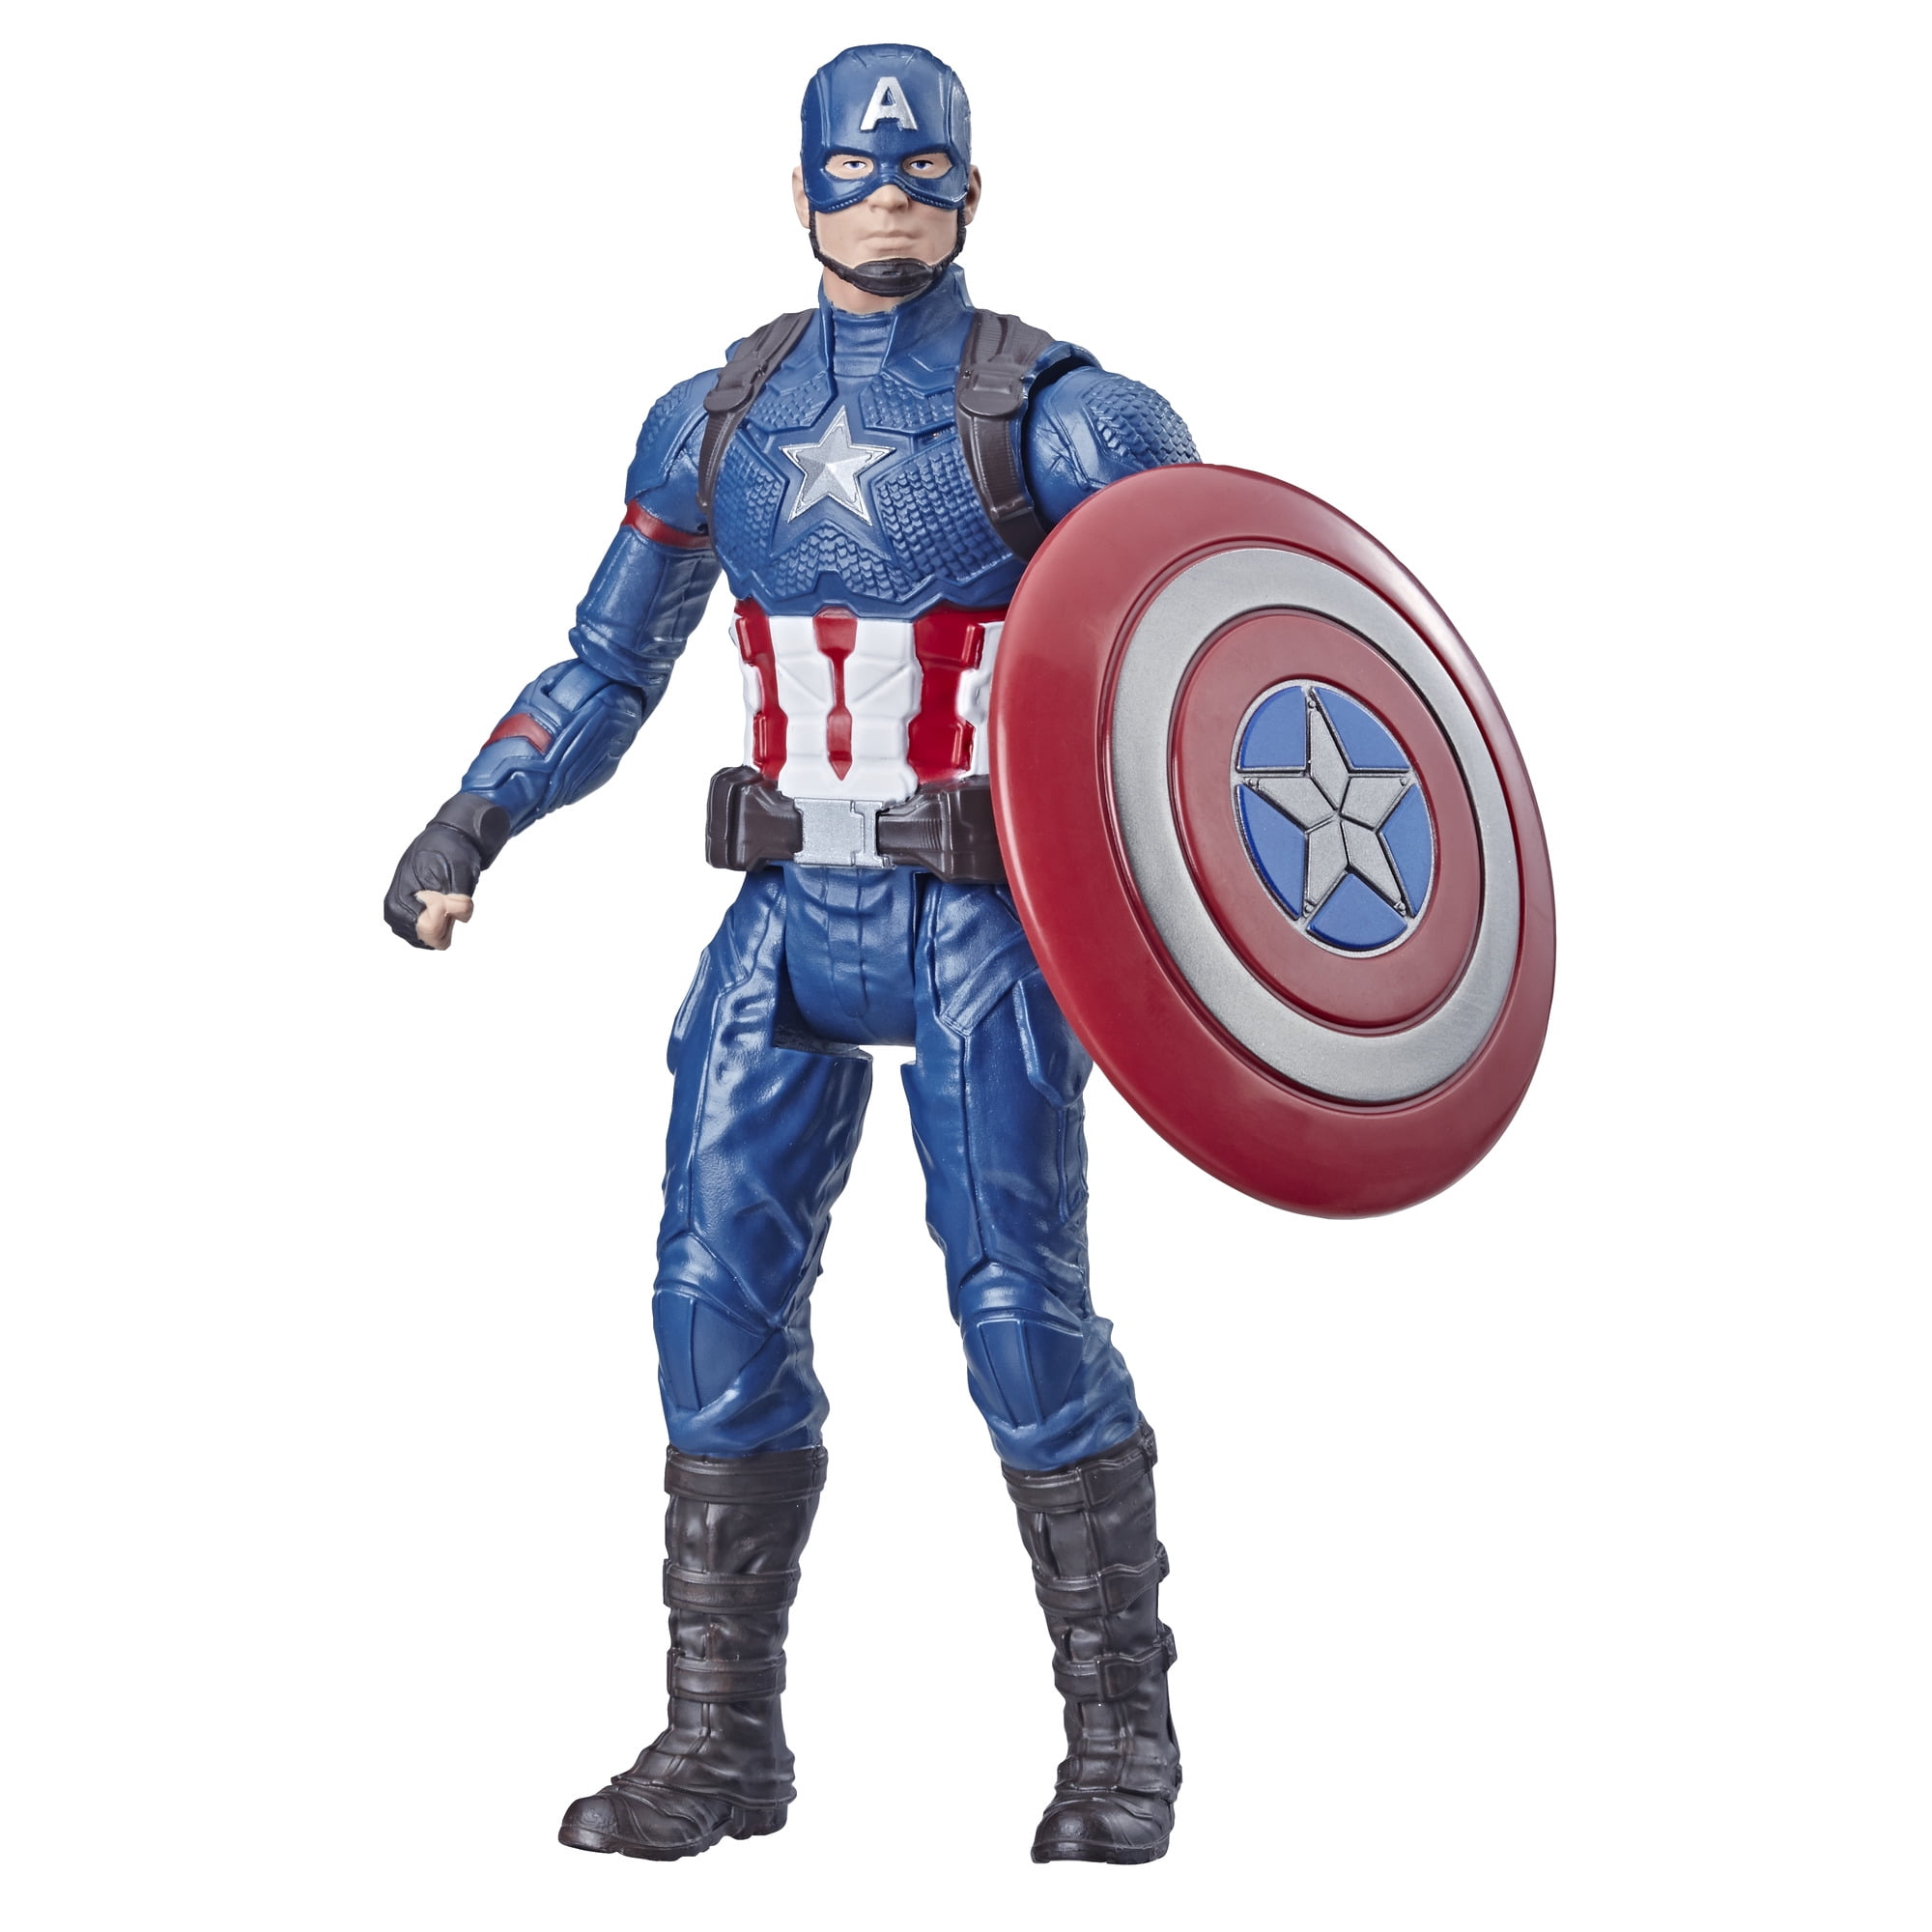 Marvel Avengers 4 Endgame 6 Inch Captain America Action Figure Disney Hasbro for sale online 